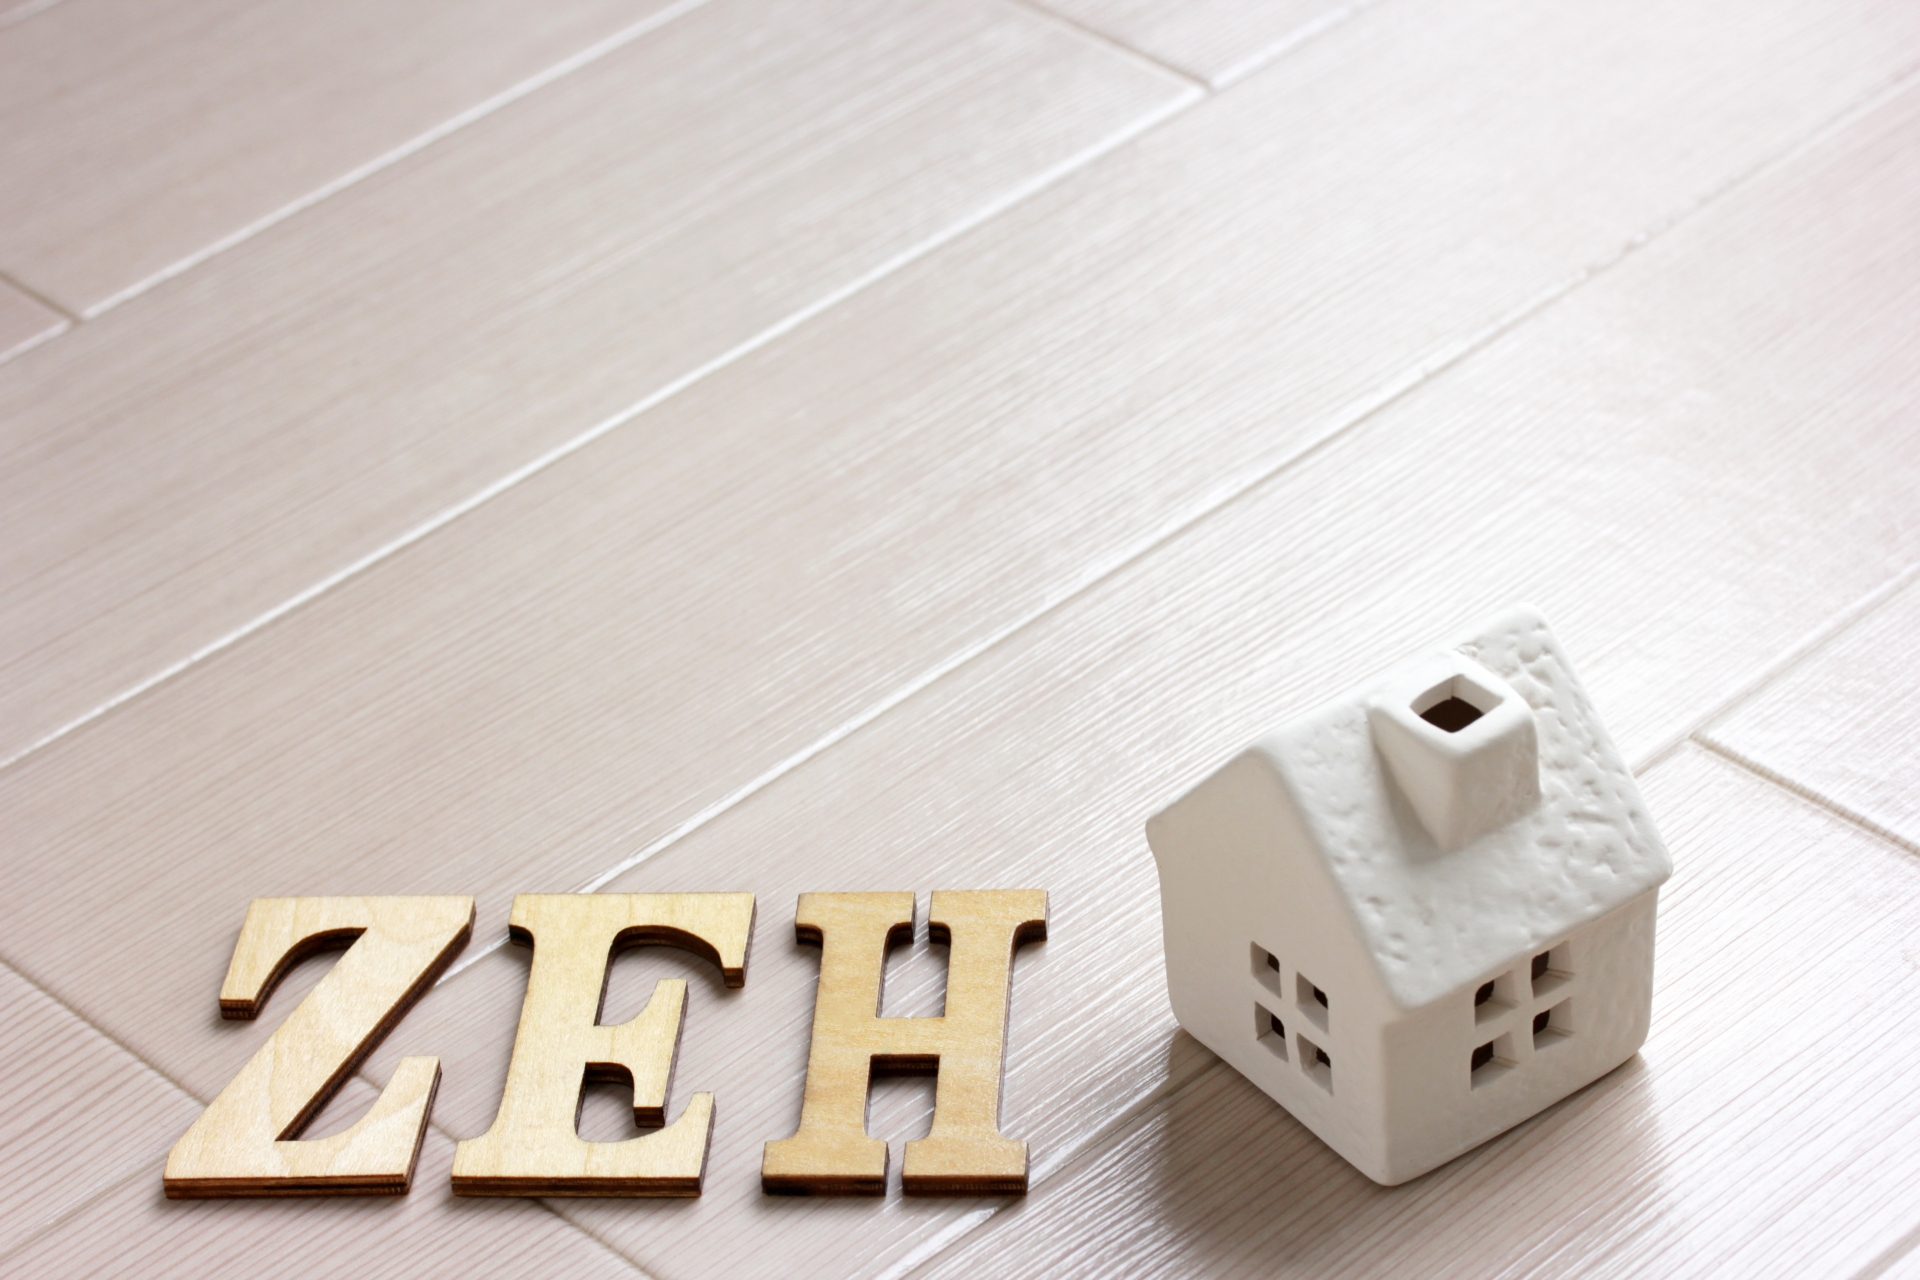 ゼロエネルギーハウス、ZEH（ゼッチ）とは？